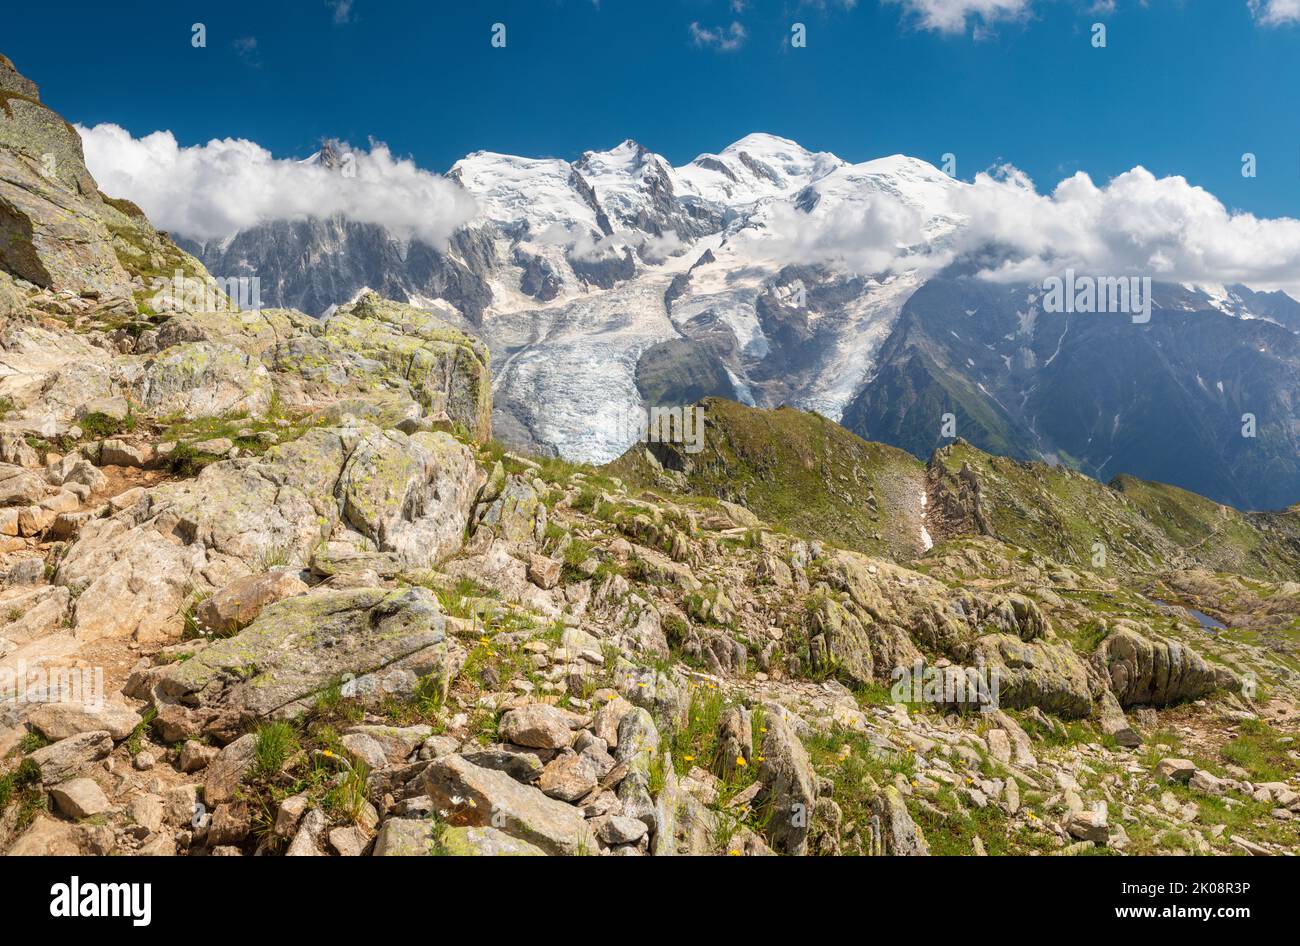 Le panorama du massif du Mont blanc et du pic de l'aiguille du midi. Banque D'Images